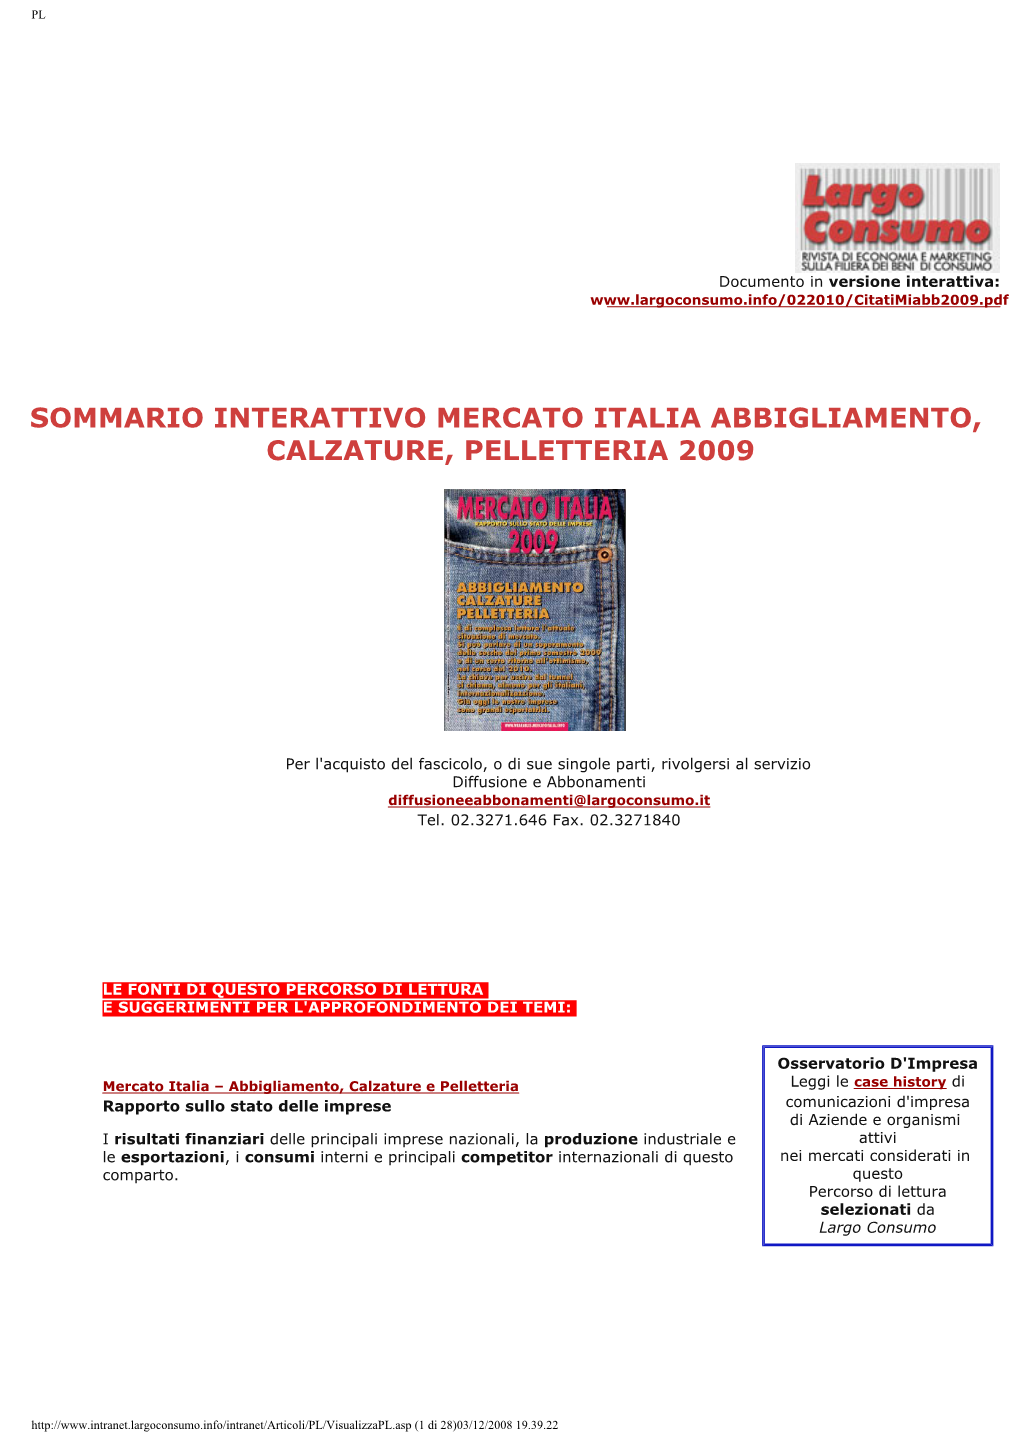 Sommario Interattivo Mercato Italia Abbigliamento, Calzature, Pelletteria 2009